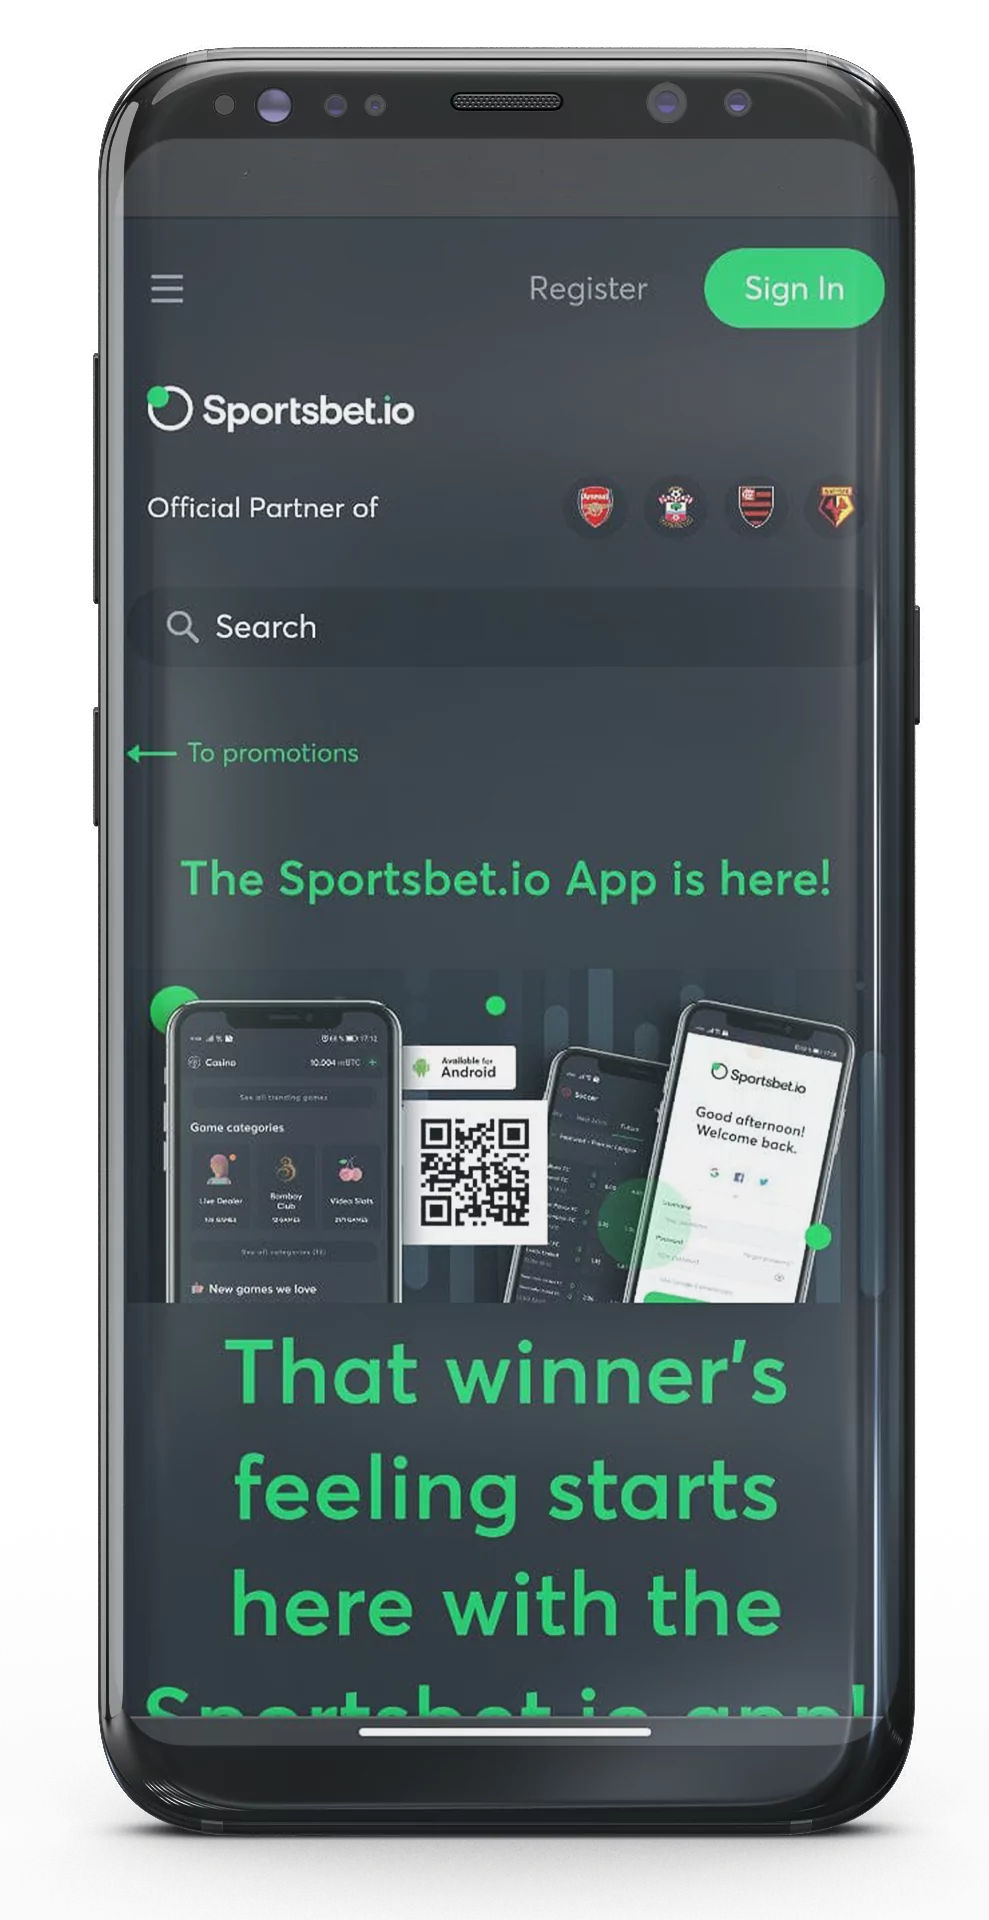 वहां आपको डाउनलोड करने के विकल्प दिखाई देंगे Sportsbet.io ऐप।